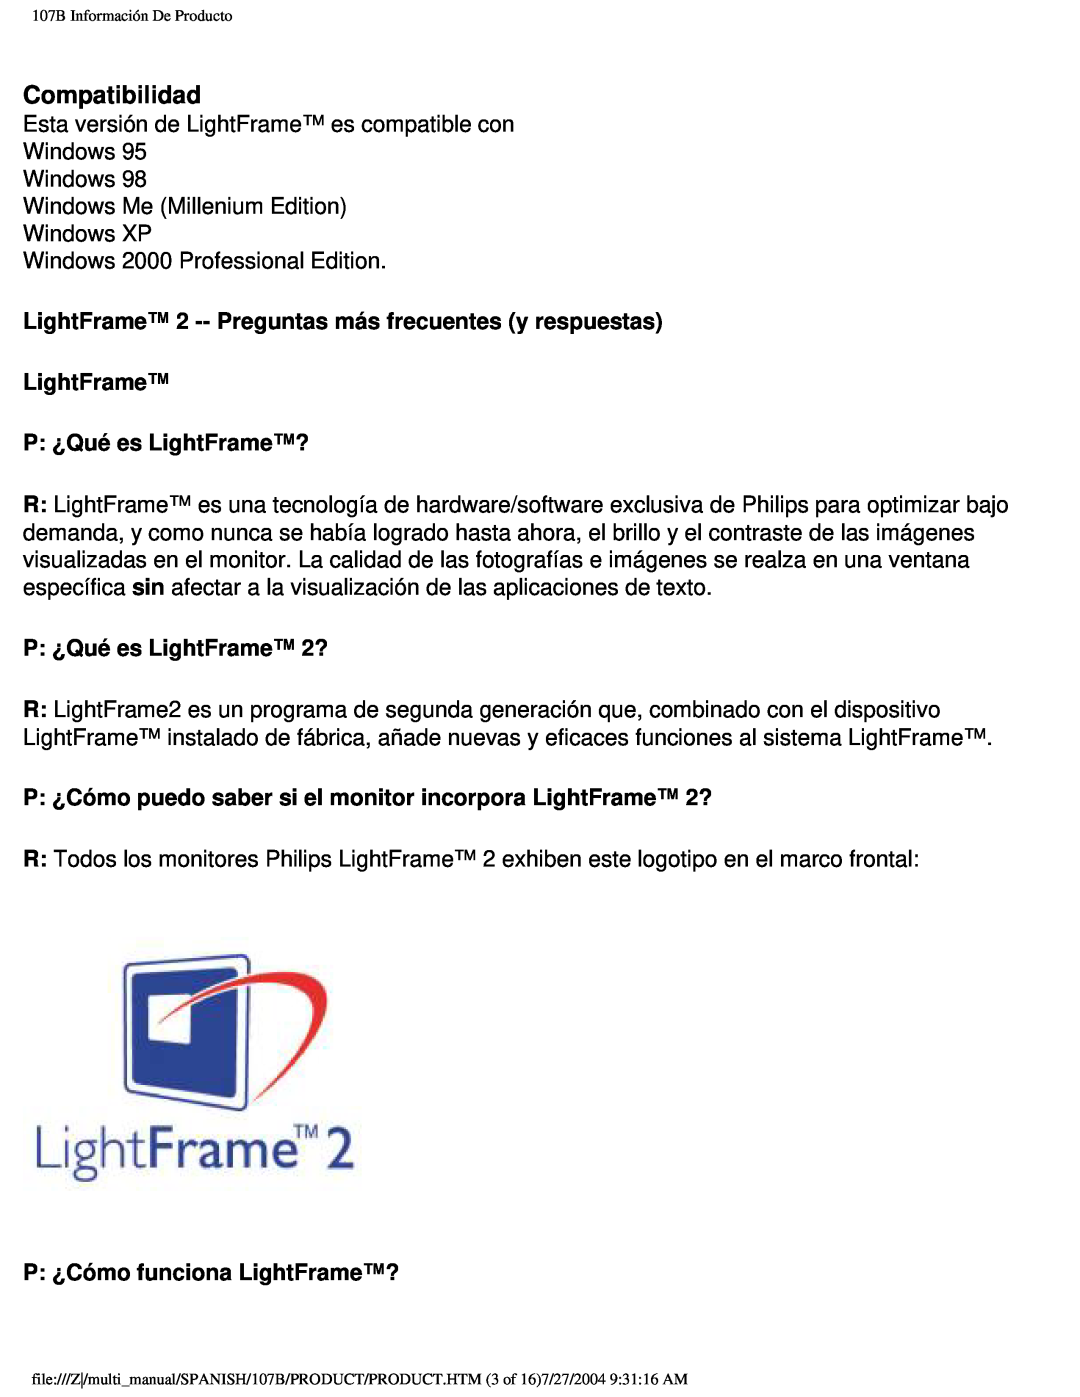 Philips 107B Compatibilidad, LightFrame 2 -- Preguntas más frecuentes y respuestas LightFrame, P ¿Qué es LightFrame? 